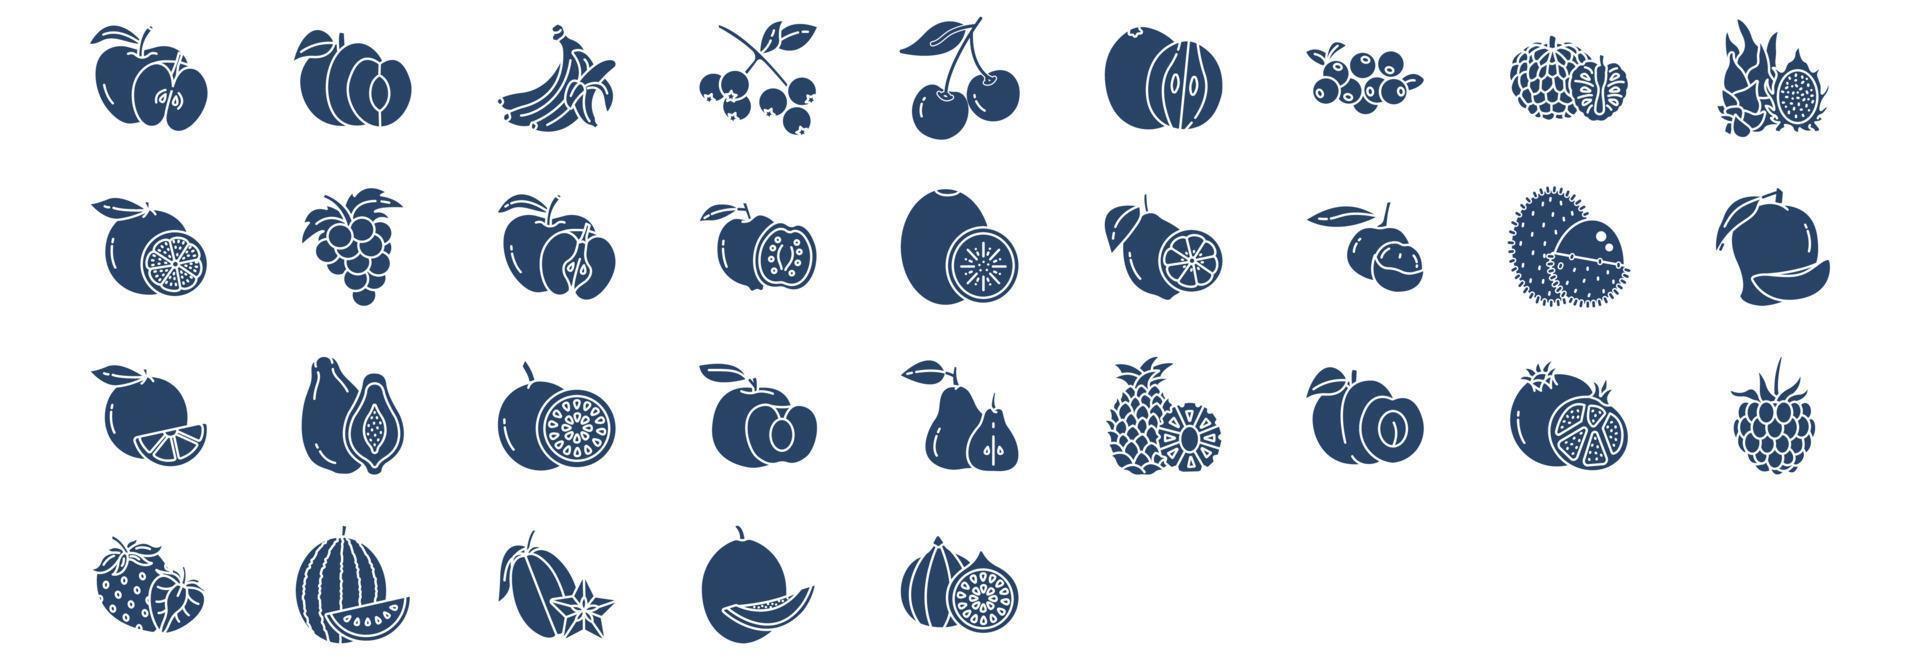 coleção de ícones relacionados a frutas, incluindo ícones como maçã, banana, uva, romã e muito mais. ilustrações vetoriais, conjunto perfeito de pixels vetor